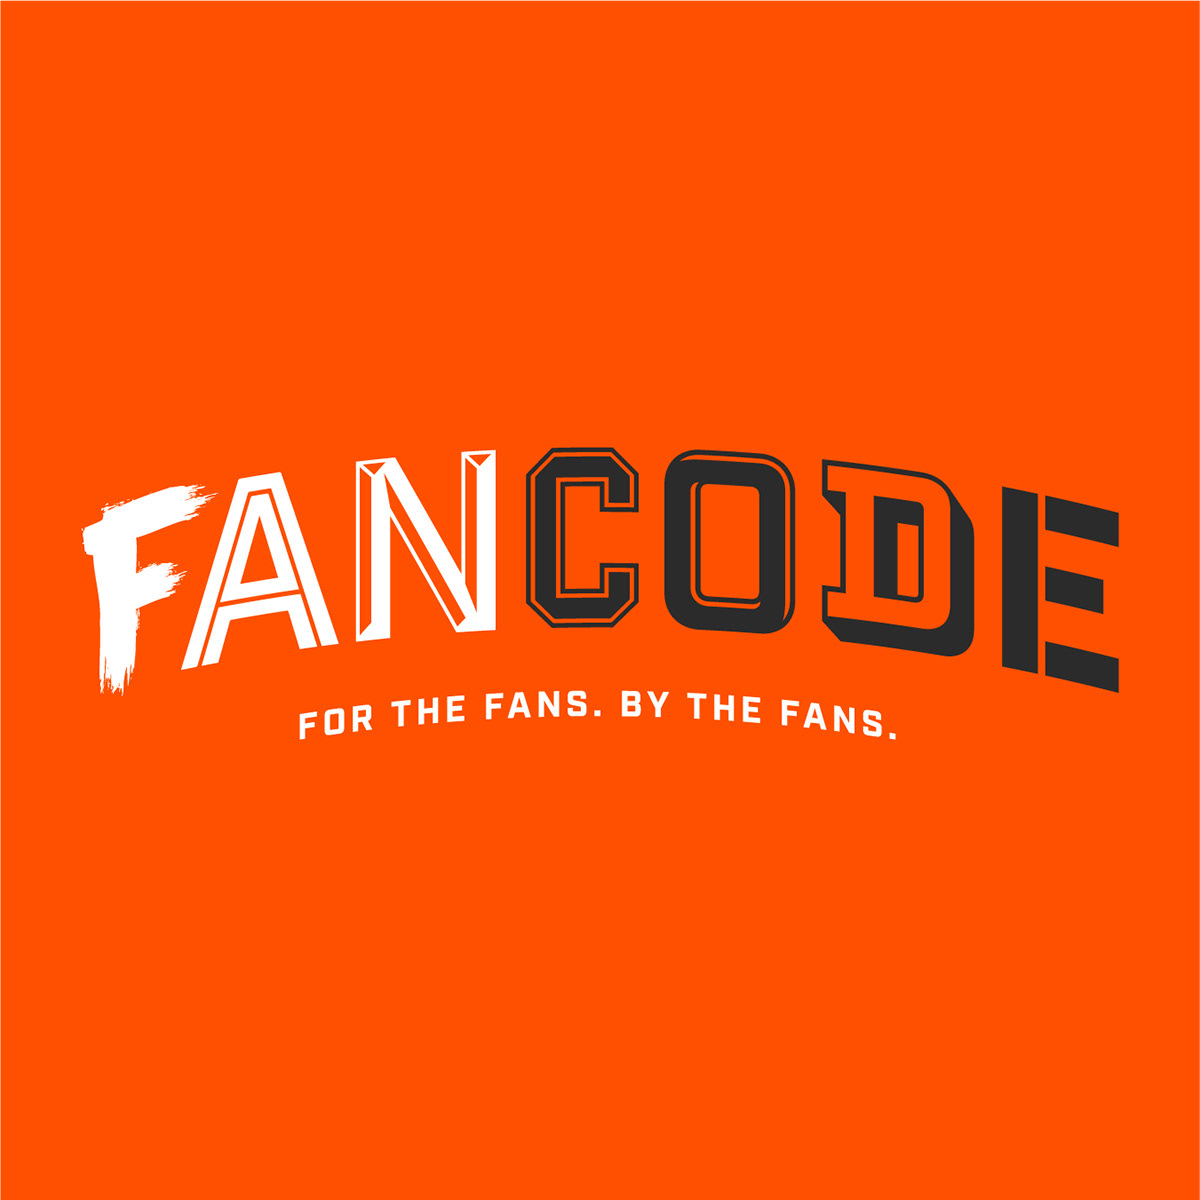 fancode by dream11 on behance